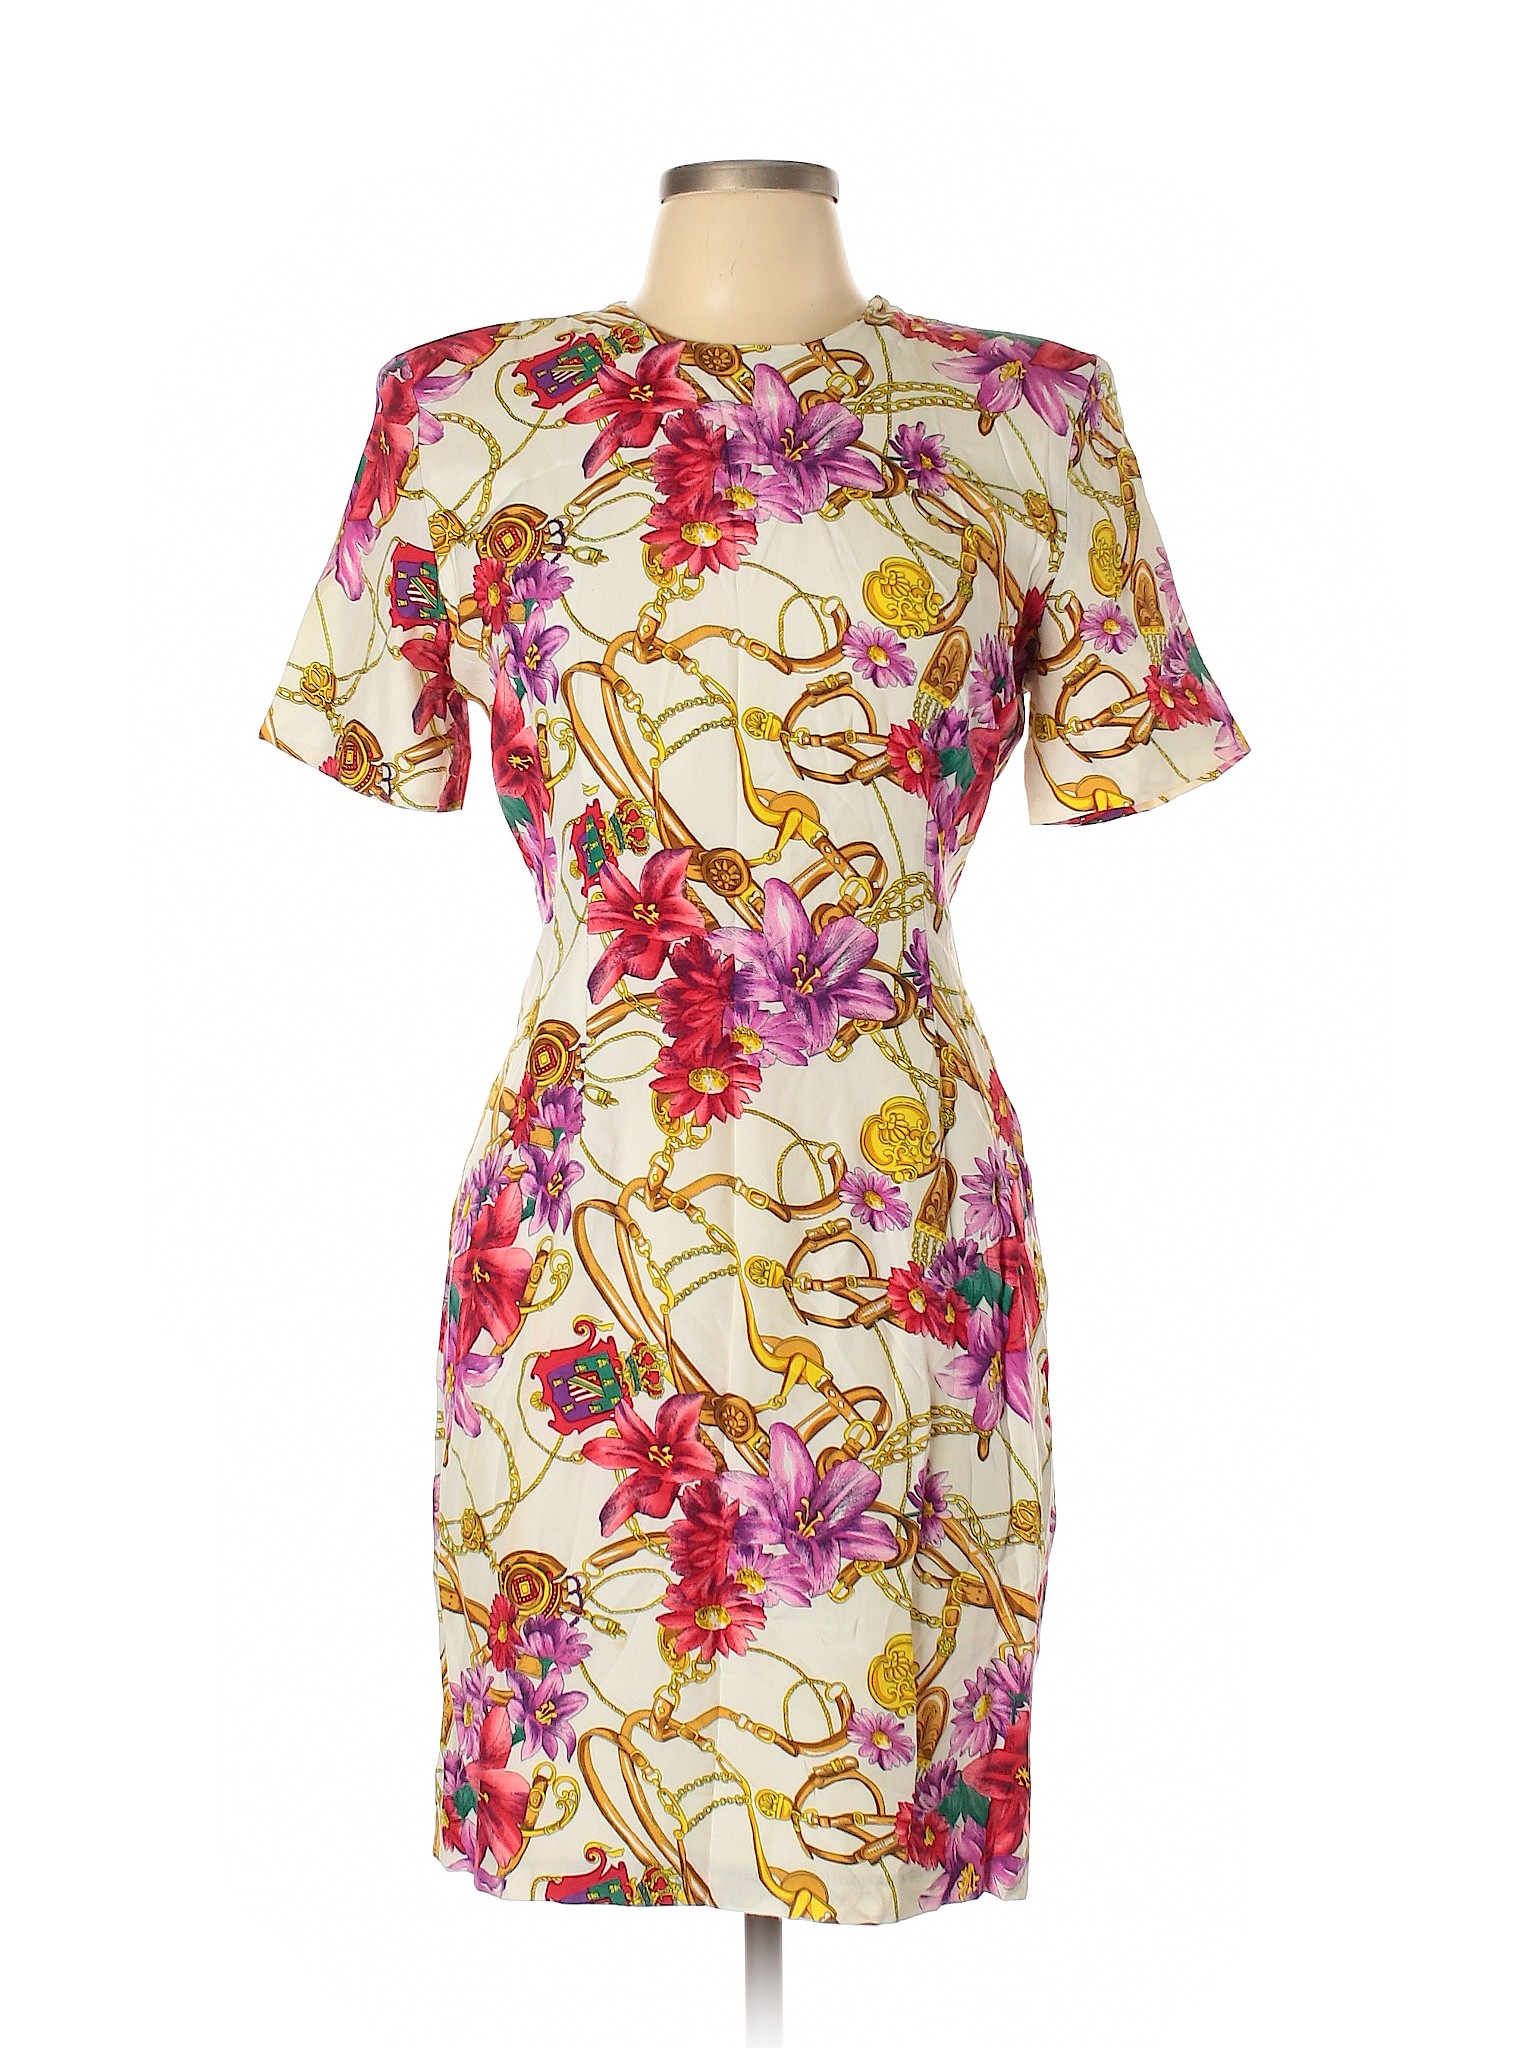 Paniz 100% Rayon Floral Yellow Casual Dress Size 10 - 72% off | thredUP